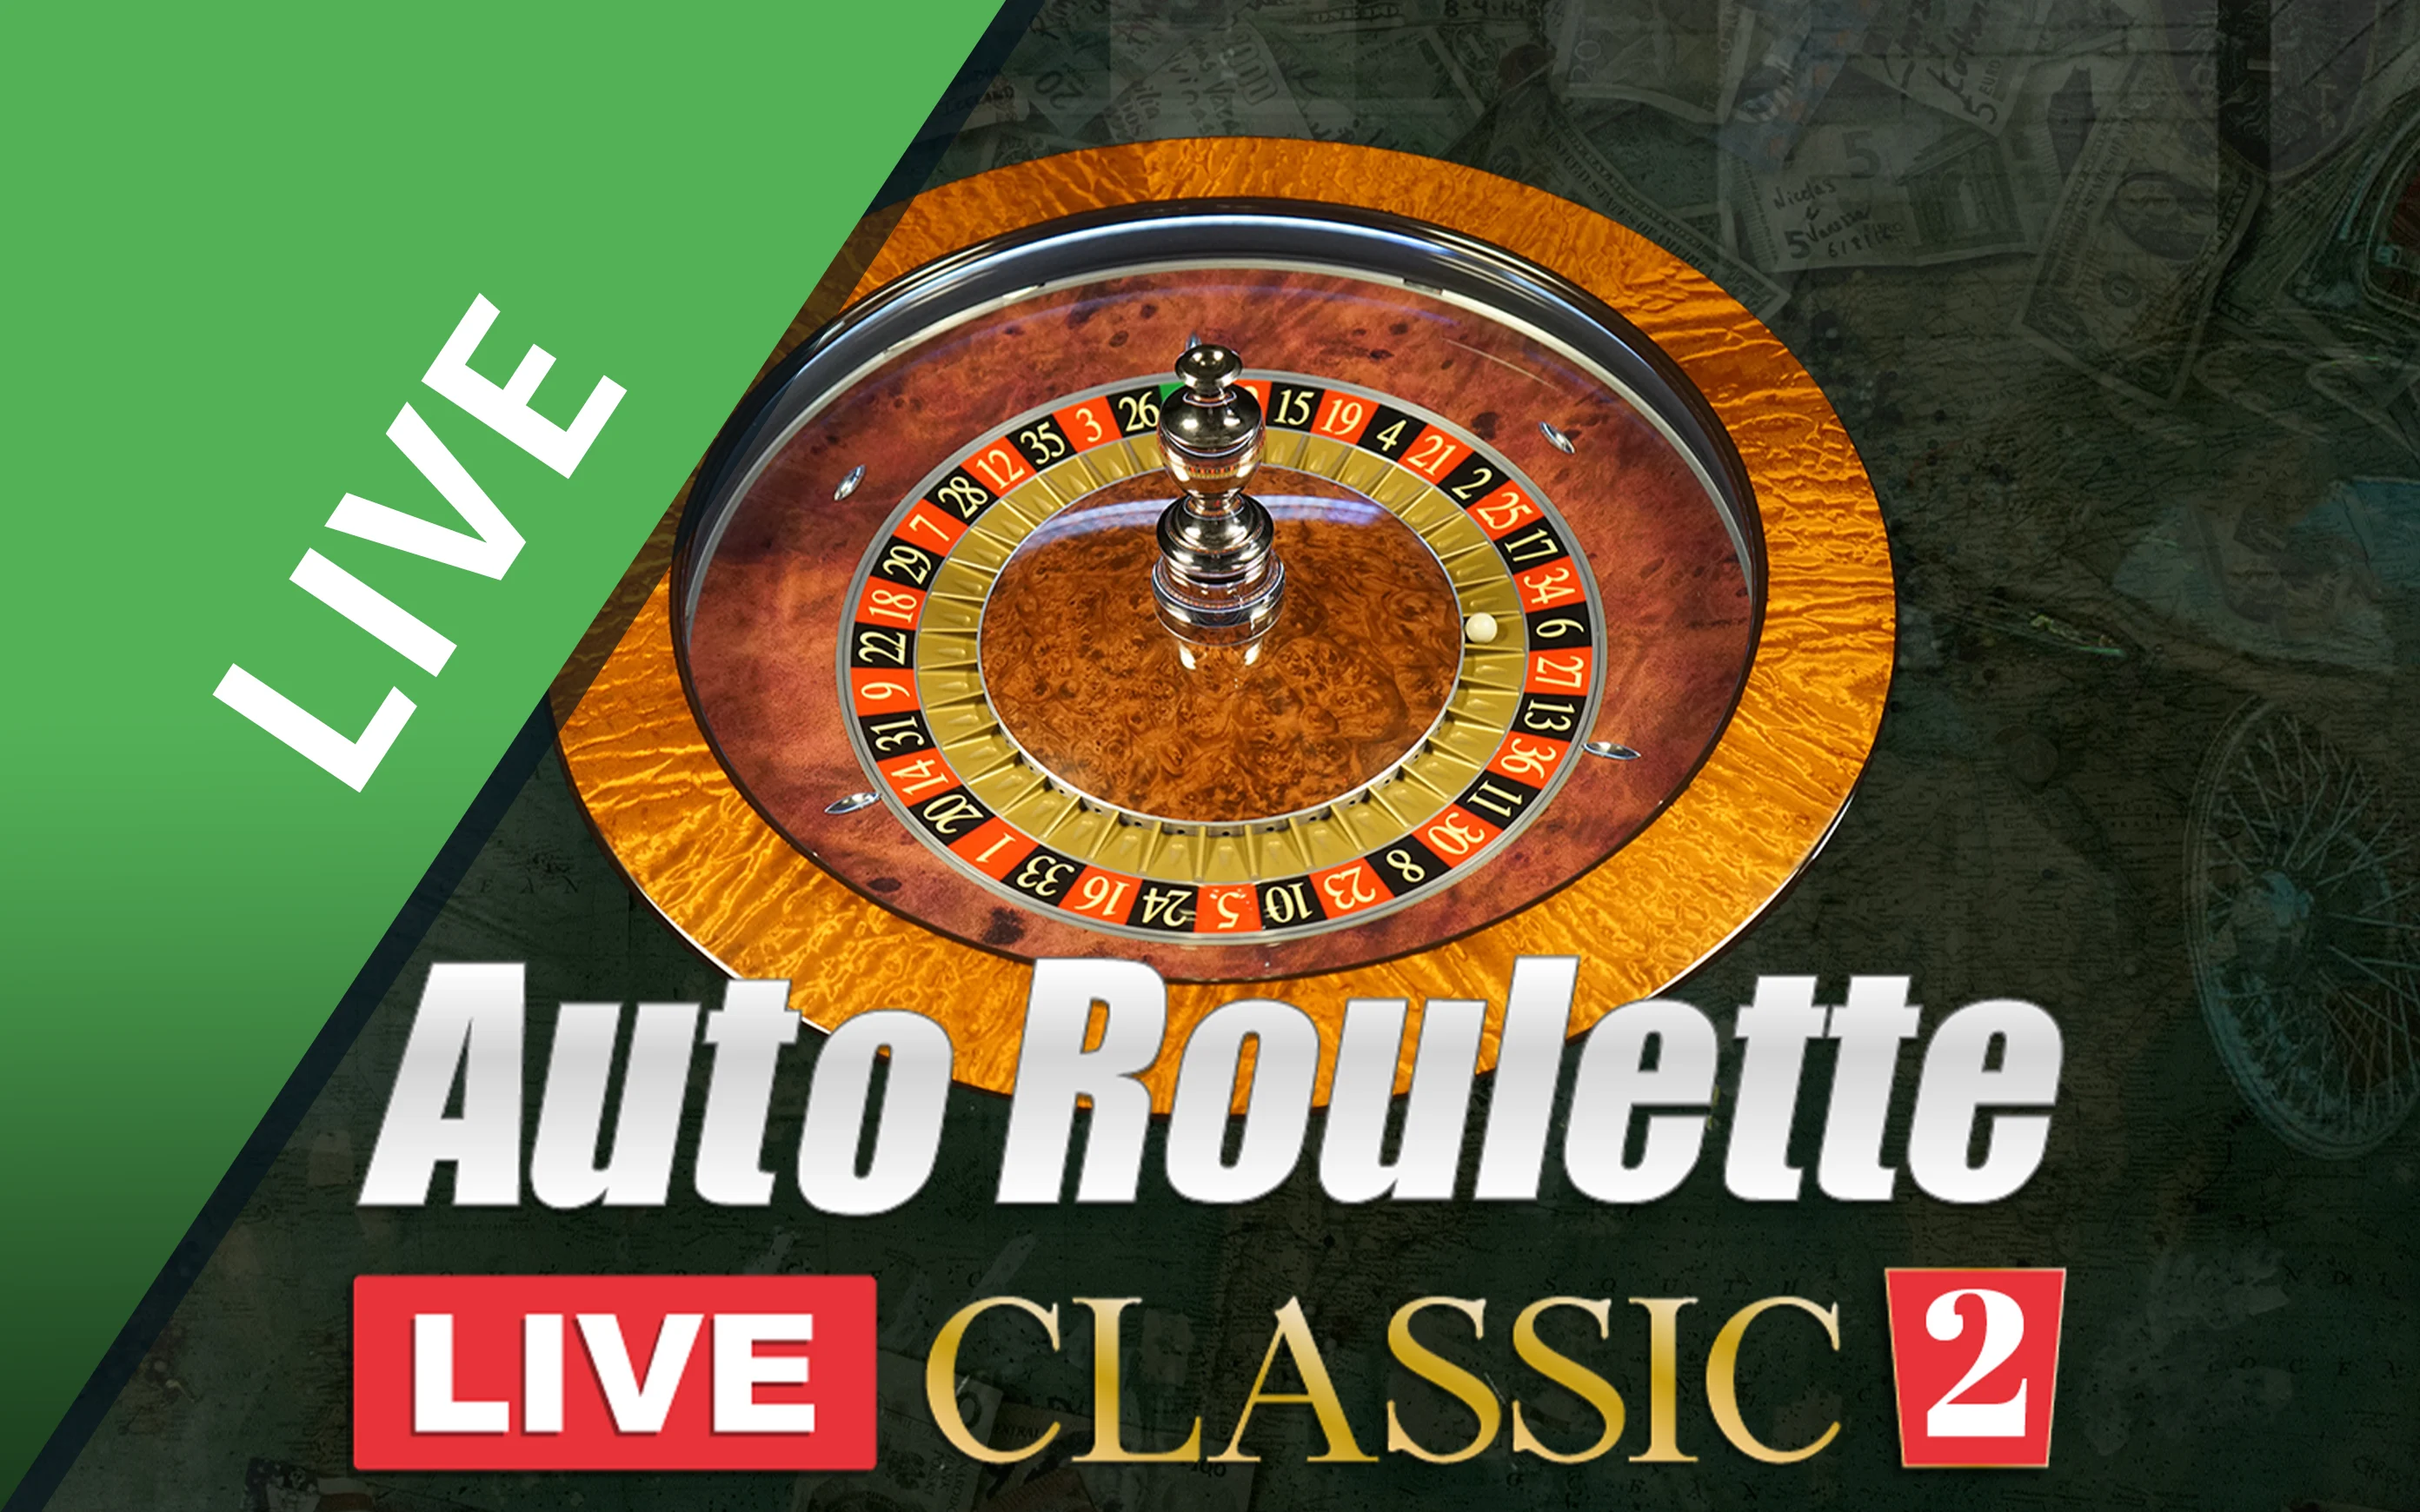 Zagraj w Classic Roulette 2 w kasynie online Starcasino.be